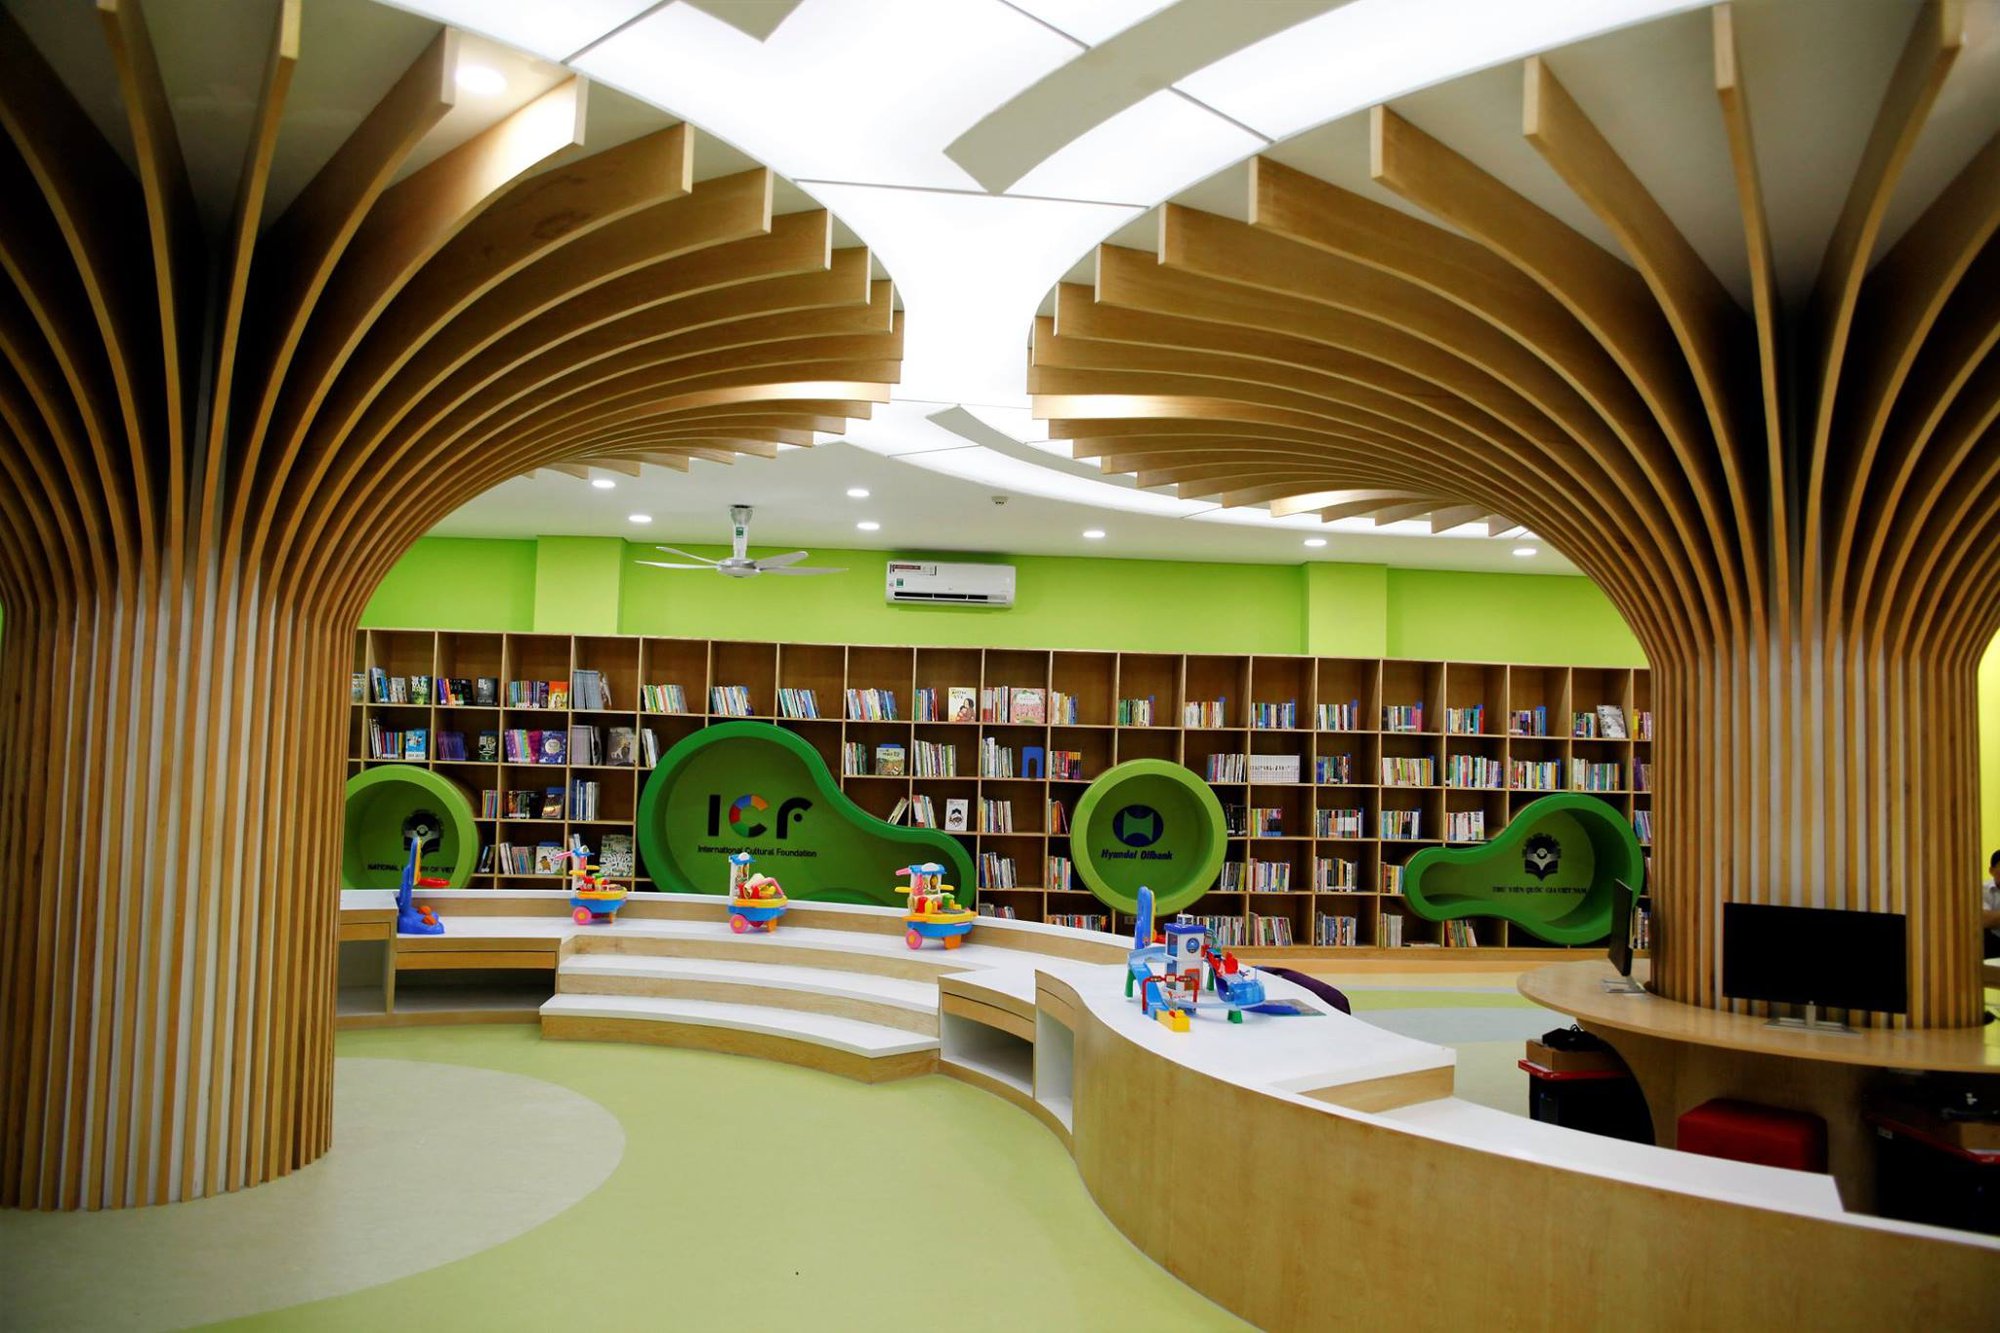 4 thư viện hiện đại, có không gian đẹp dành cho trẻ em ở Hà Nội